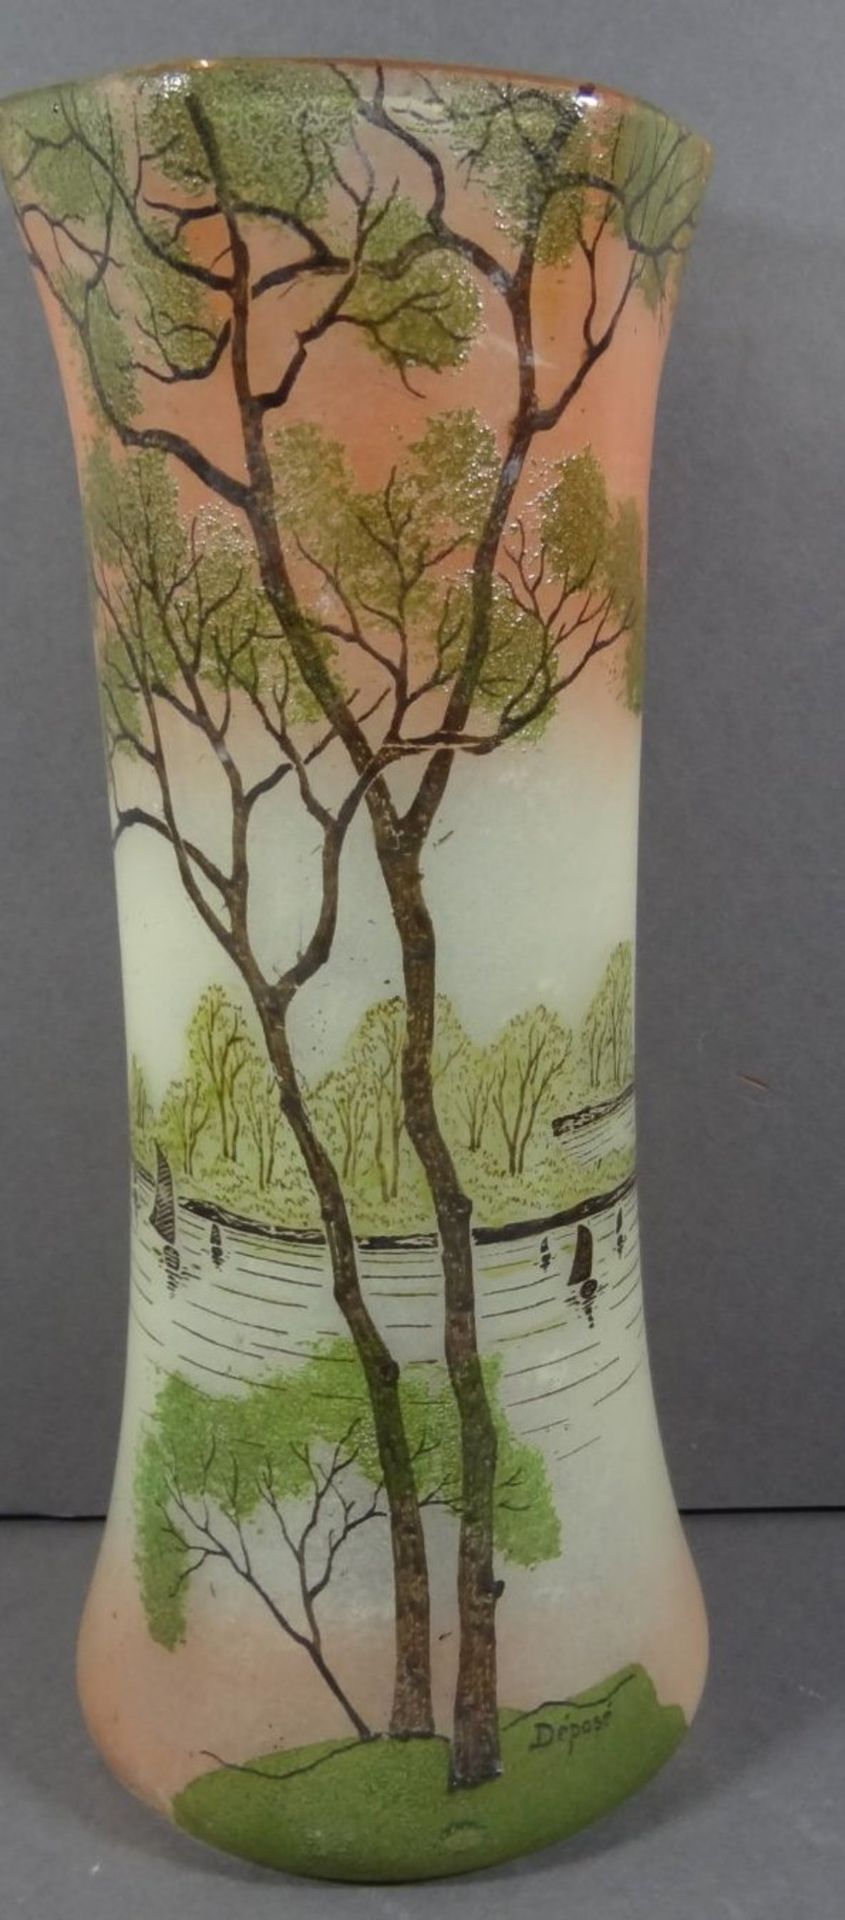 Jugendstil-Vase, beschriftet Depose, bemalt mit Fluss-Szenerie, H-28 cm, D-12 cm - Bild 3 aus 8